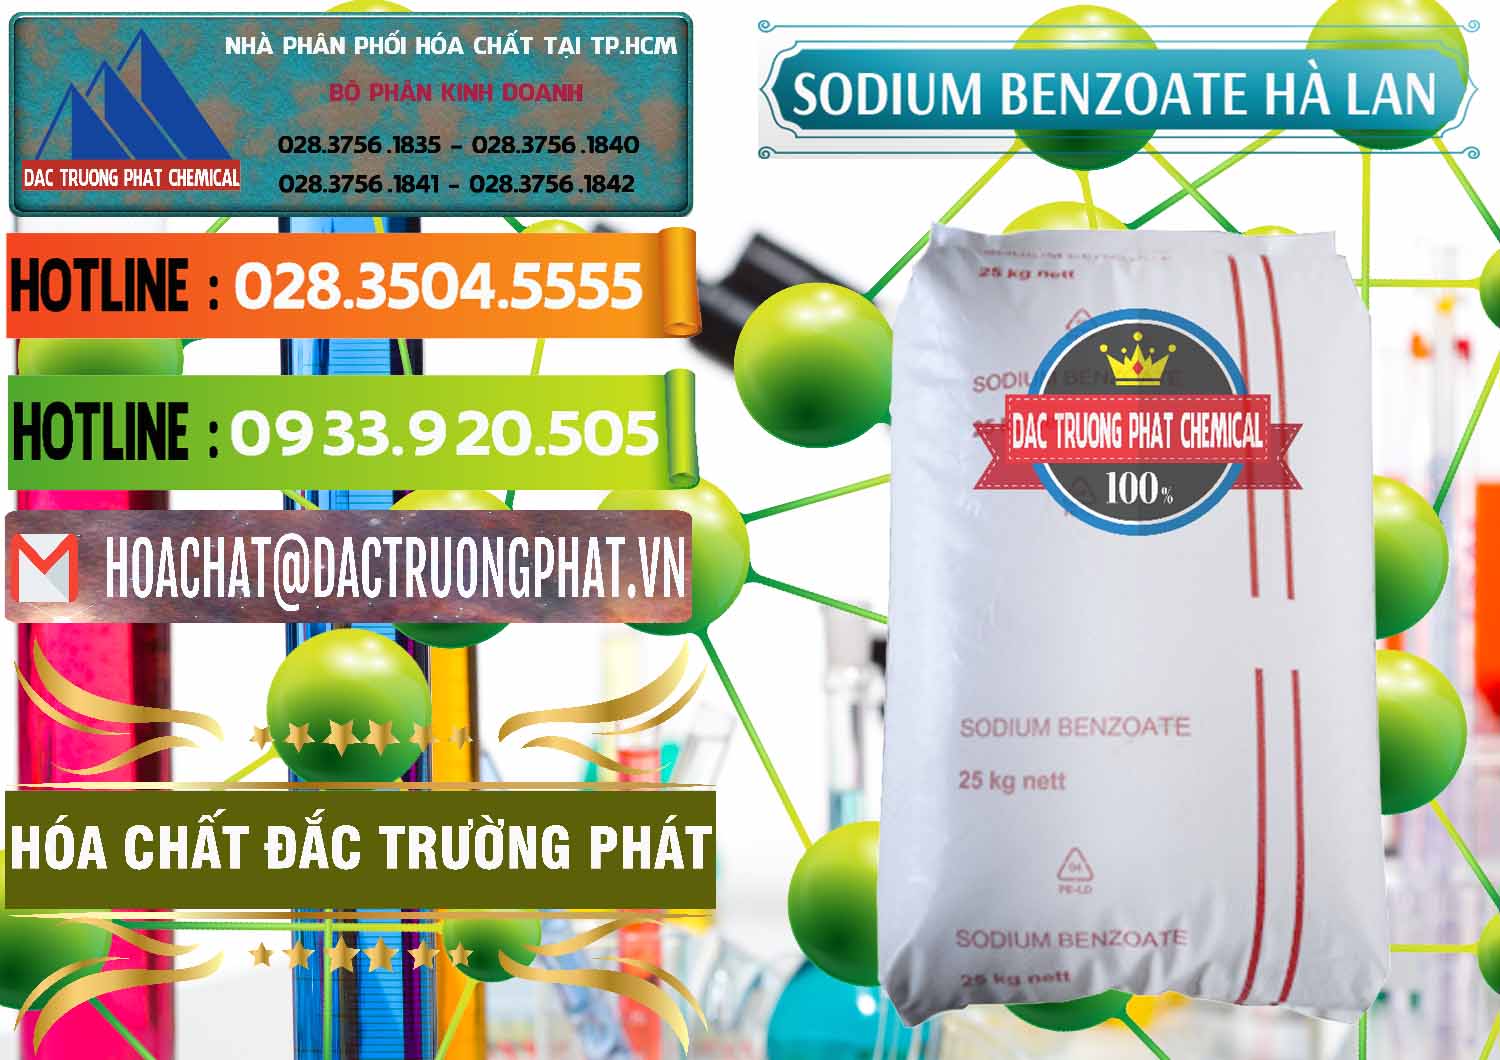 Nơi bán _ cung ứng Sodium Benzoate - Mốc Bột Chữ Cam Hà Lan Netherlands - 0360 - Cty chuyên phân phối & nhập khẩu hóa chất tại TP.HCM - cungcaphoachat.com.vn